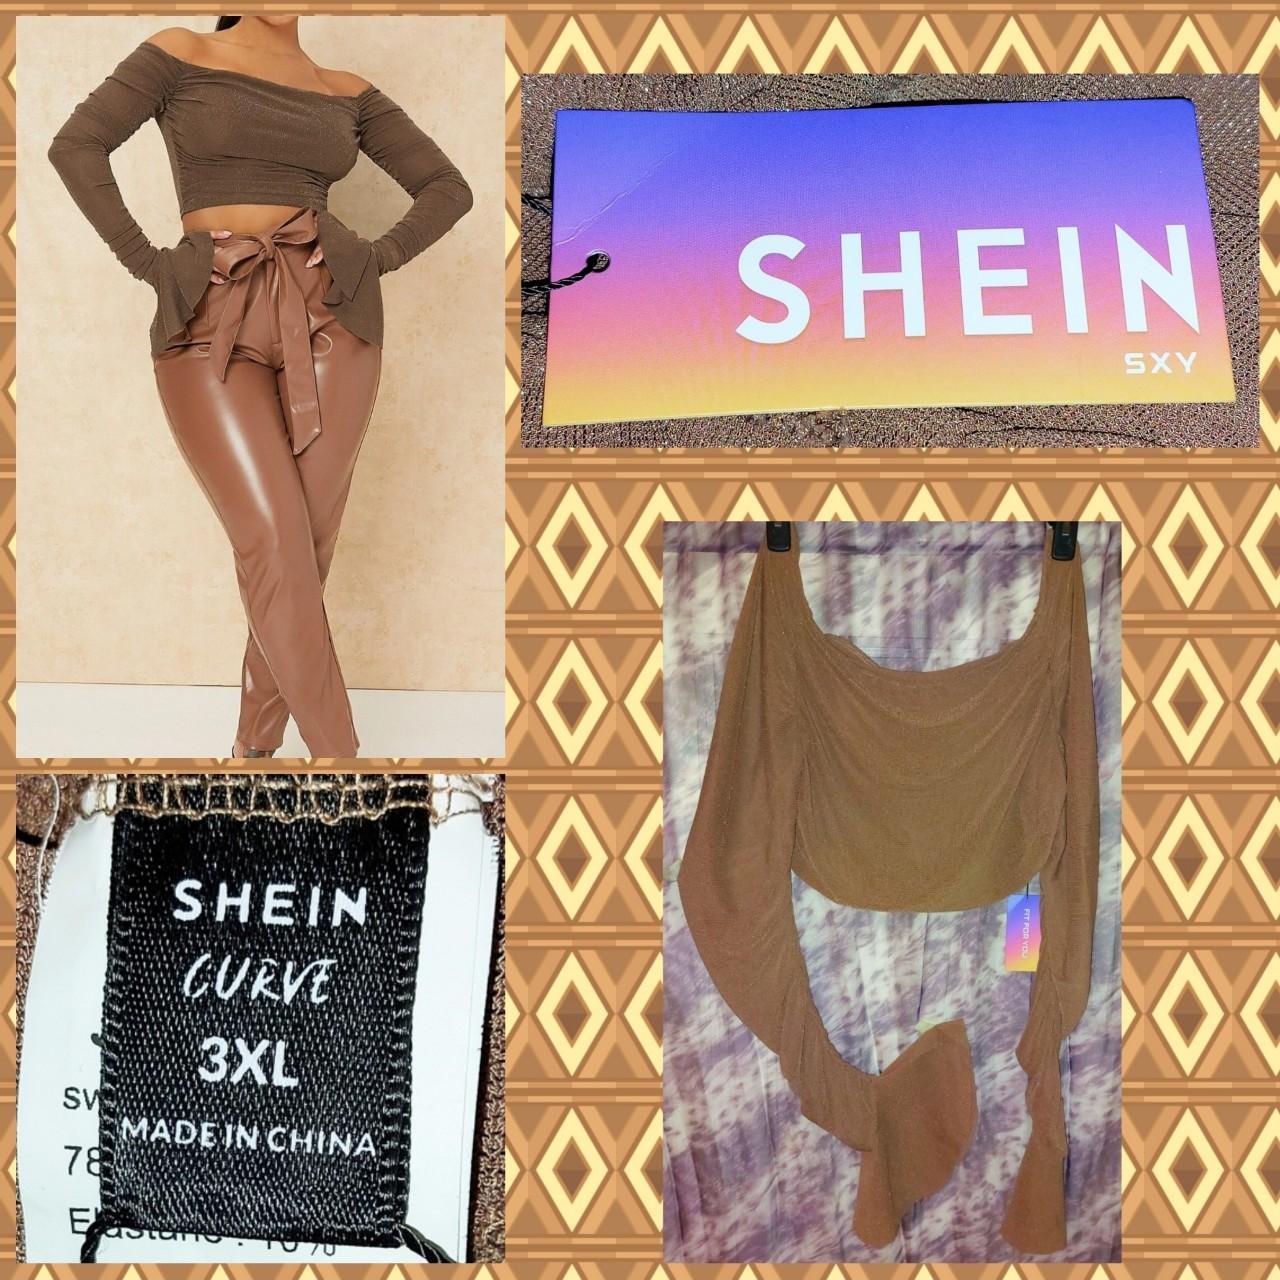 SHEIN CURVE - These are the golden days 🌞 IG:@oliviasworld95 Shop Item #:  1489438 1425149 Size:4xl 4xl    #SHEIN #SHEINgals #SHEINcurve #SHEINfw2020 #SHEINBlackFriday  #OneMillionSHEINbucks #tee